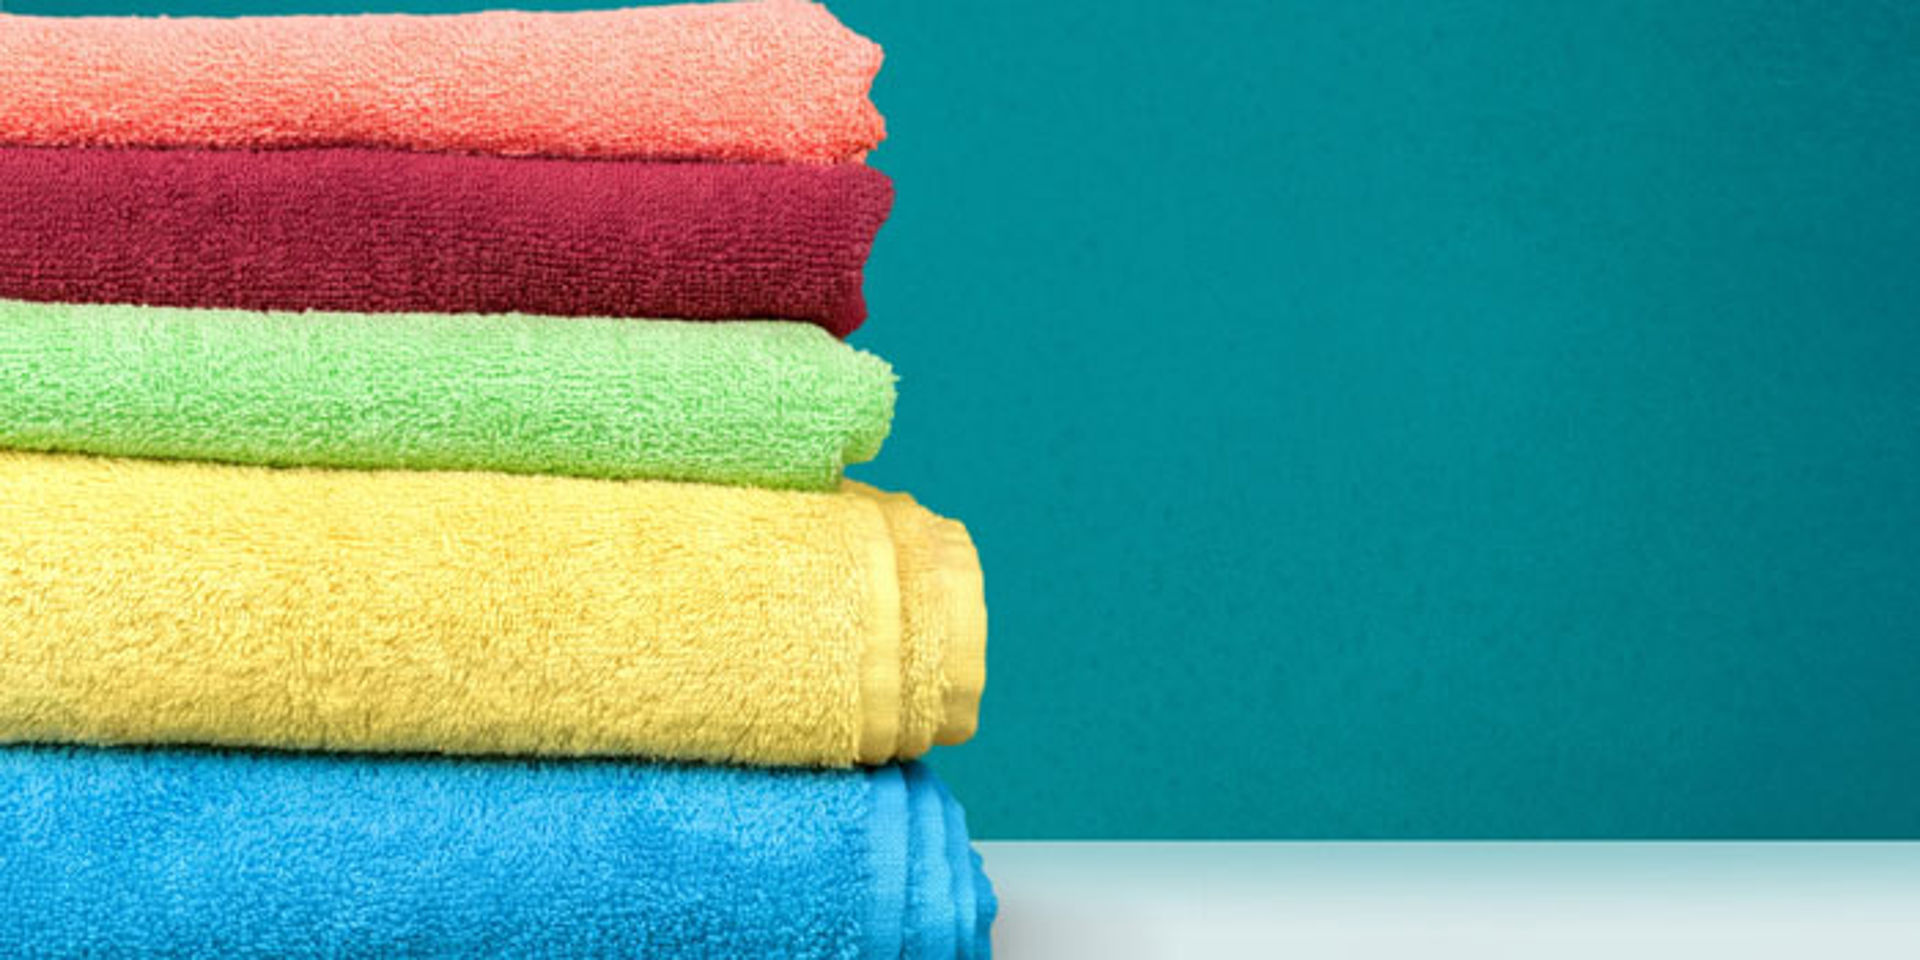 Servicio renting de toallas de mano para empresas ᐅ WASHROCKS